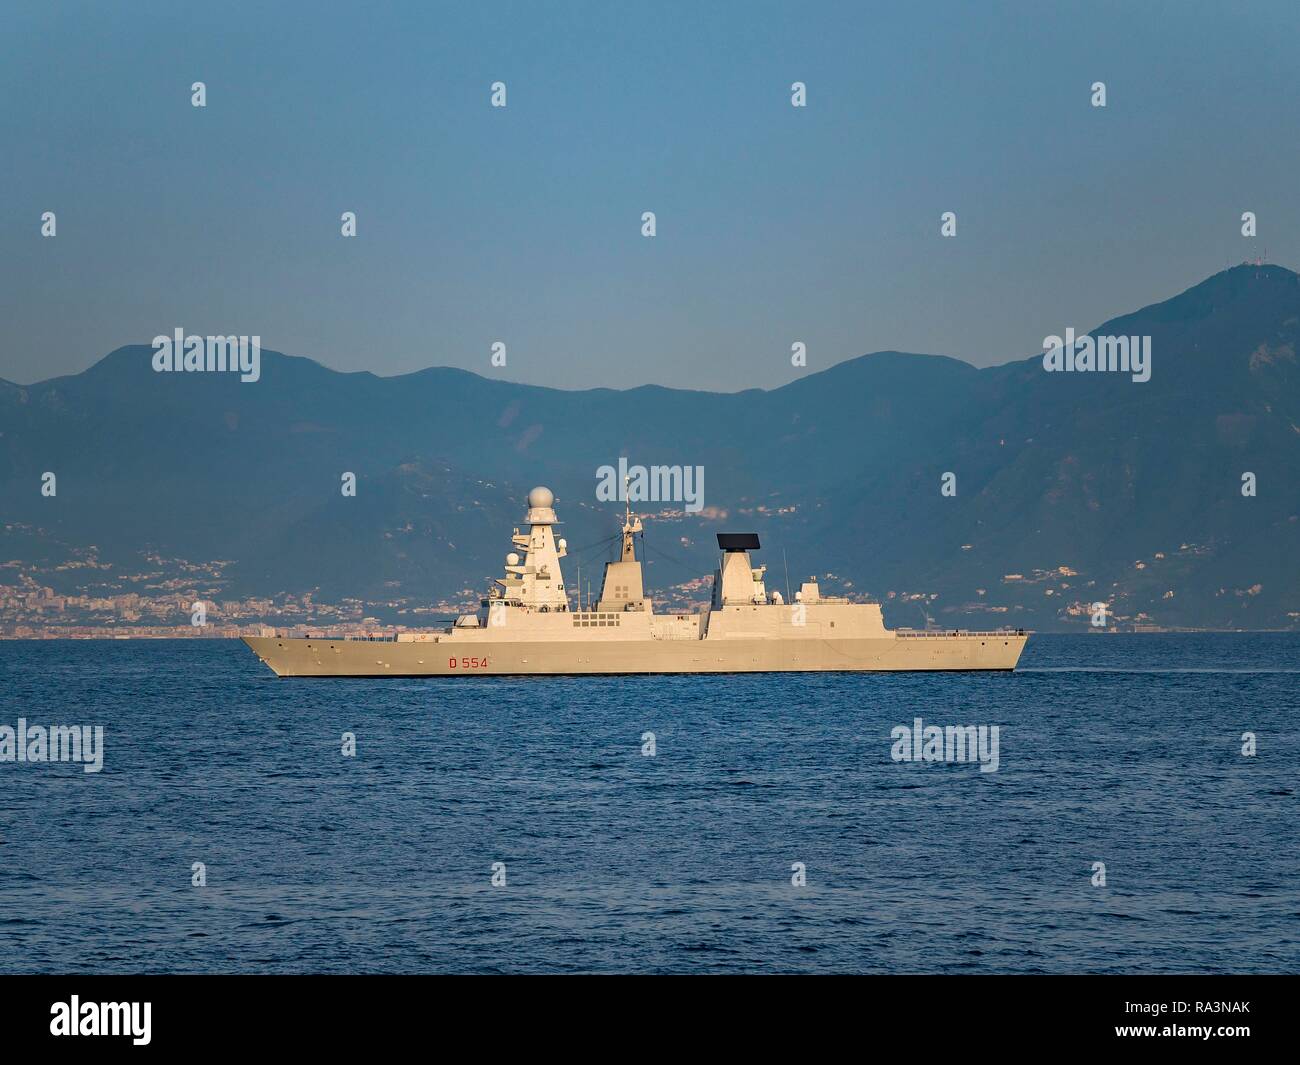 Caio Dullio, navire de classe Horizon, rocket équipée frégate, navire d'escorte pour les porte-avions dans les ports, le golfe de Naples, Naples Banque D'Images